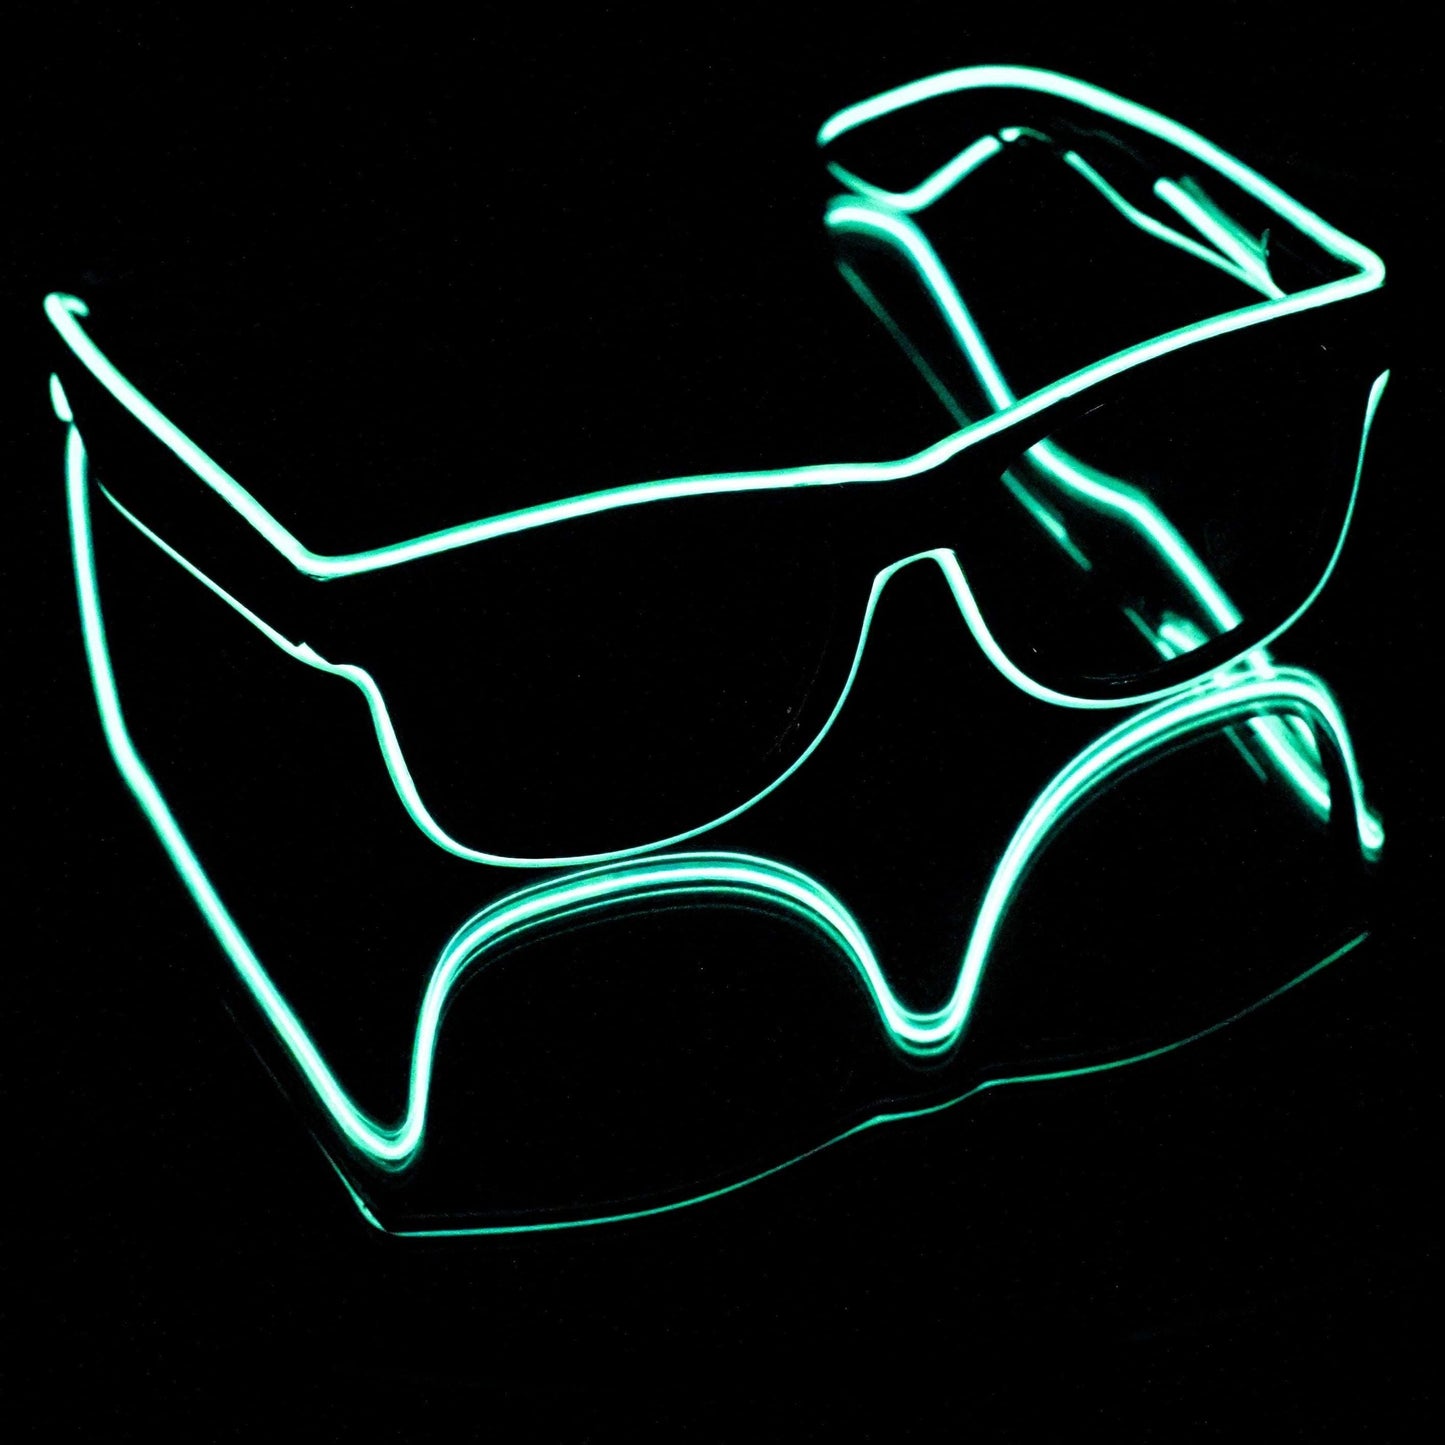 NTH Rave LED Sunglasses (50 Pcs) | Not That High